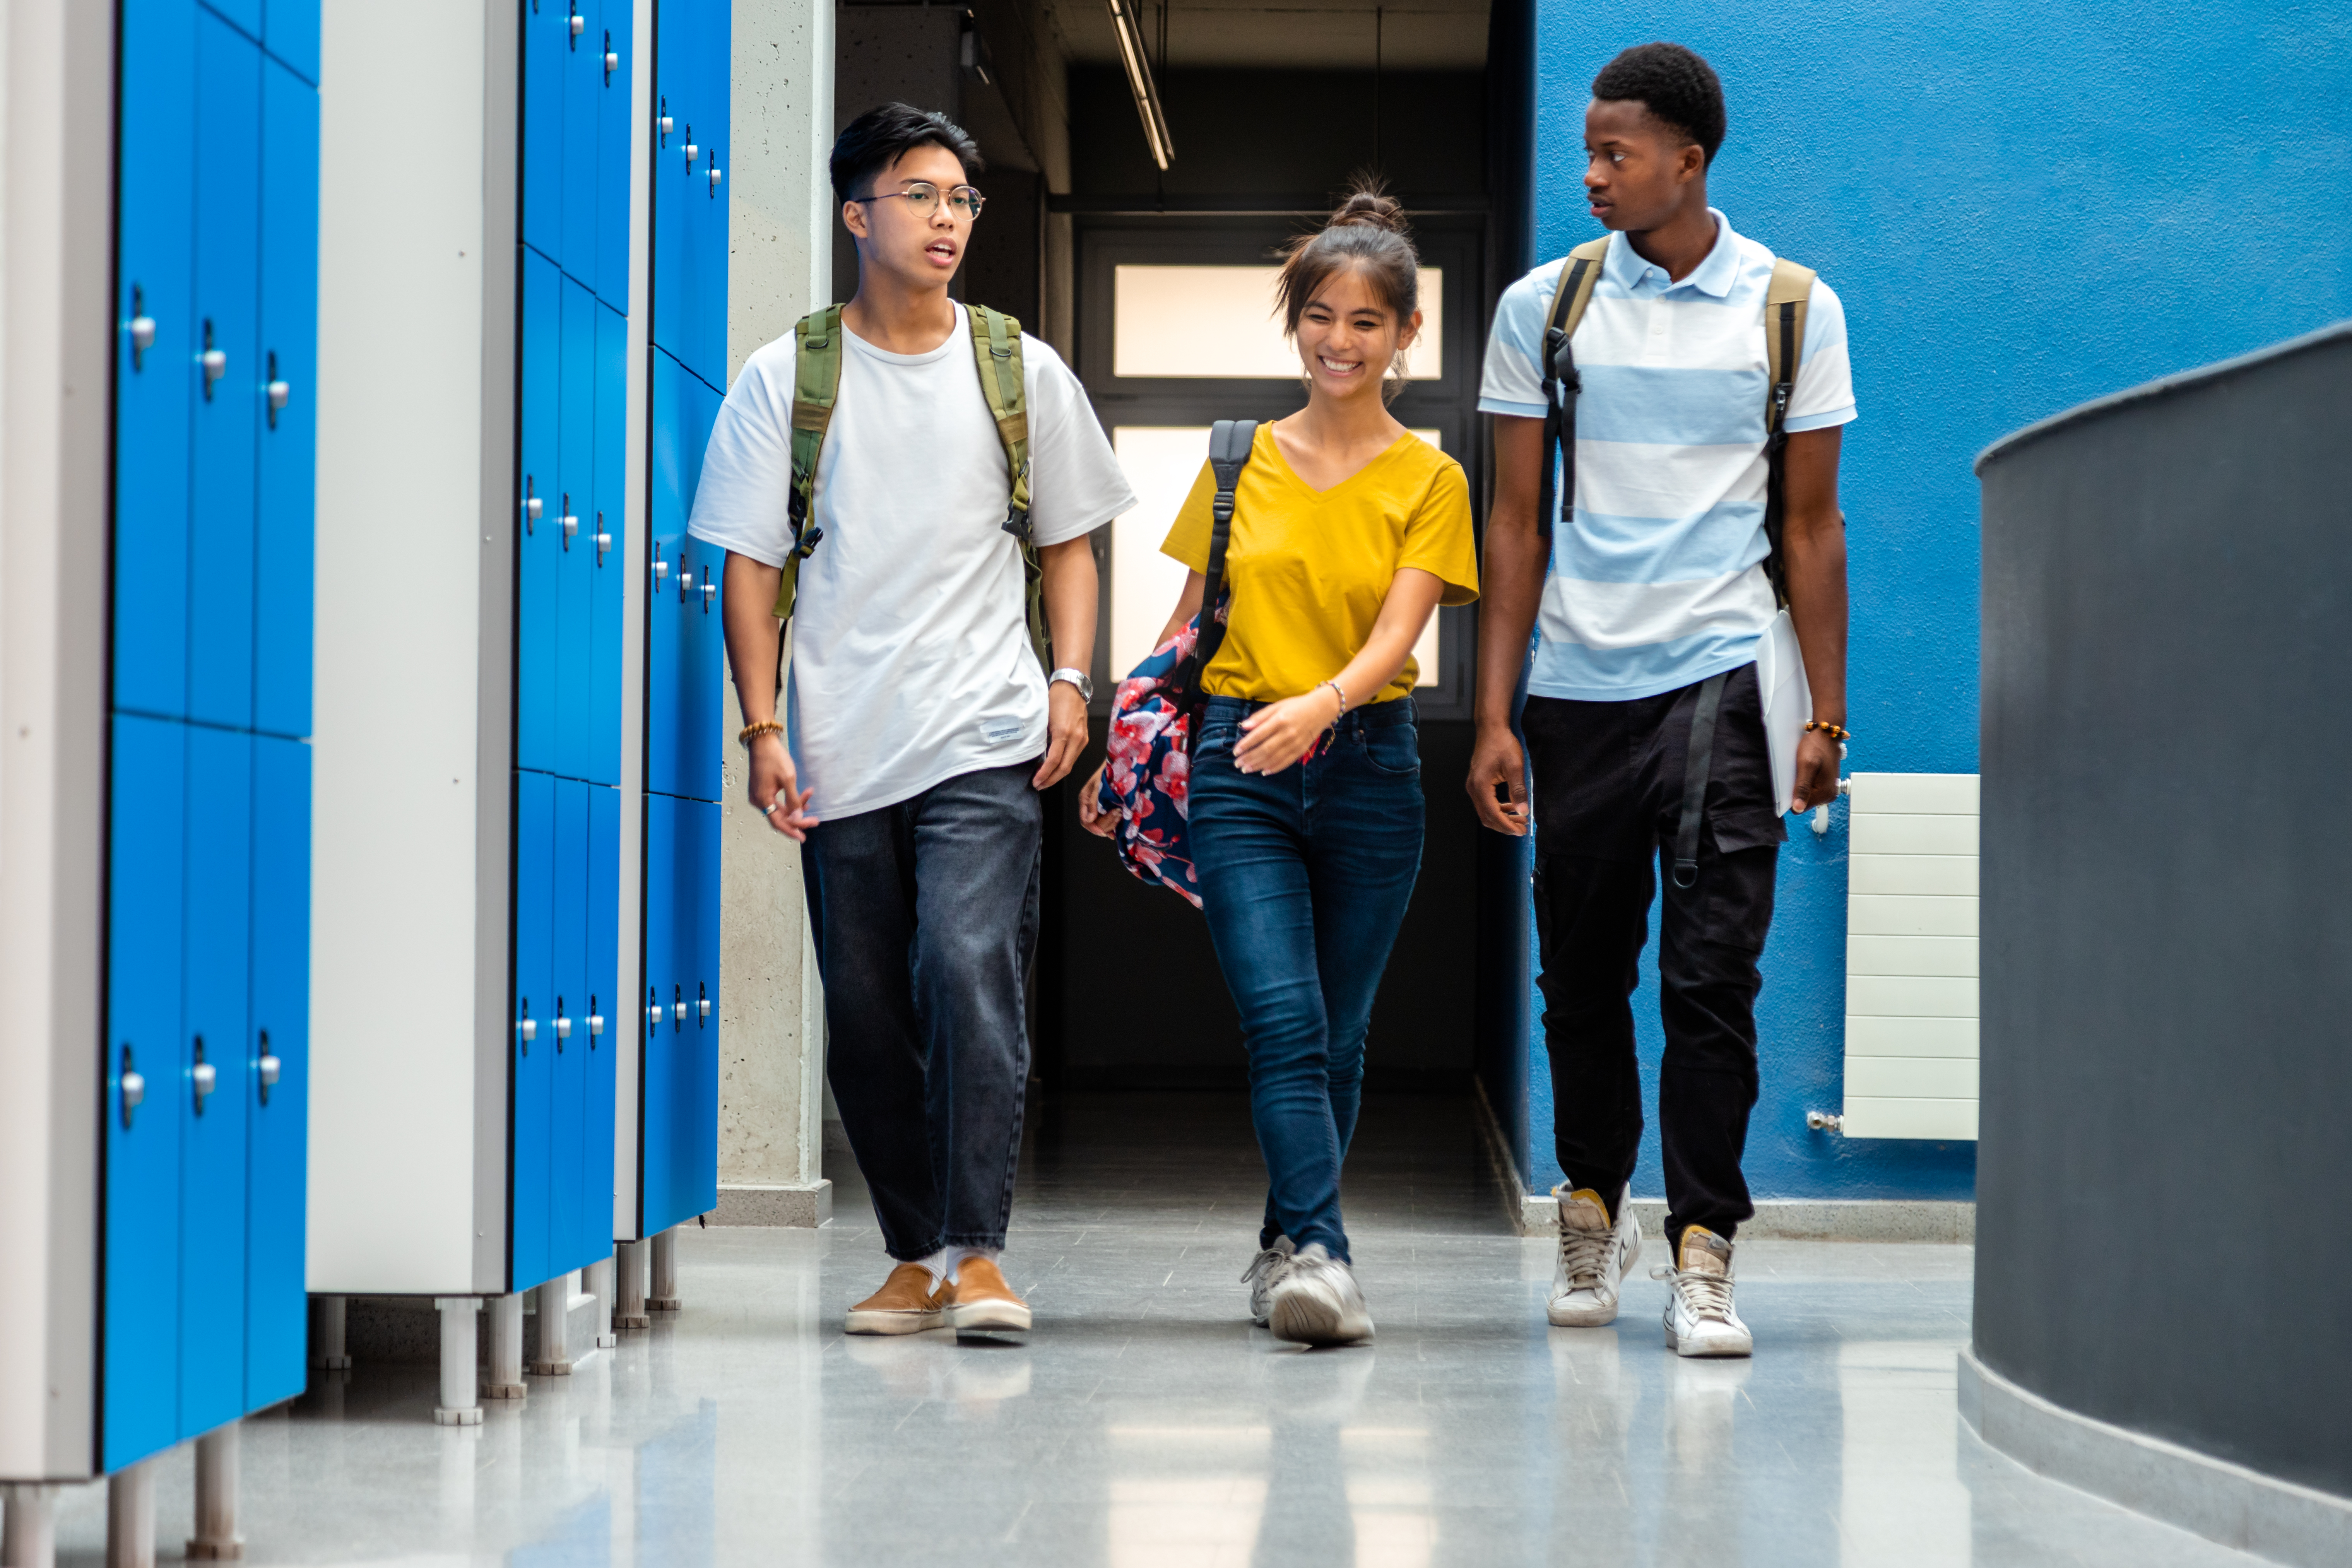 ultiracial teen high school students changing classes walking in school corridor. Back to school.